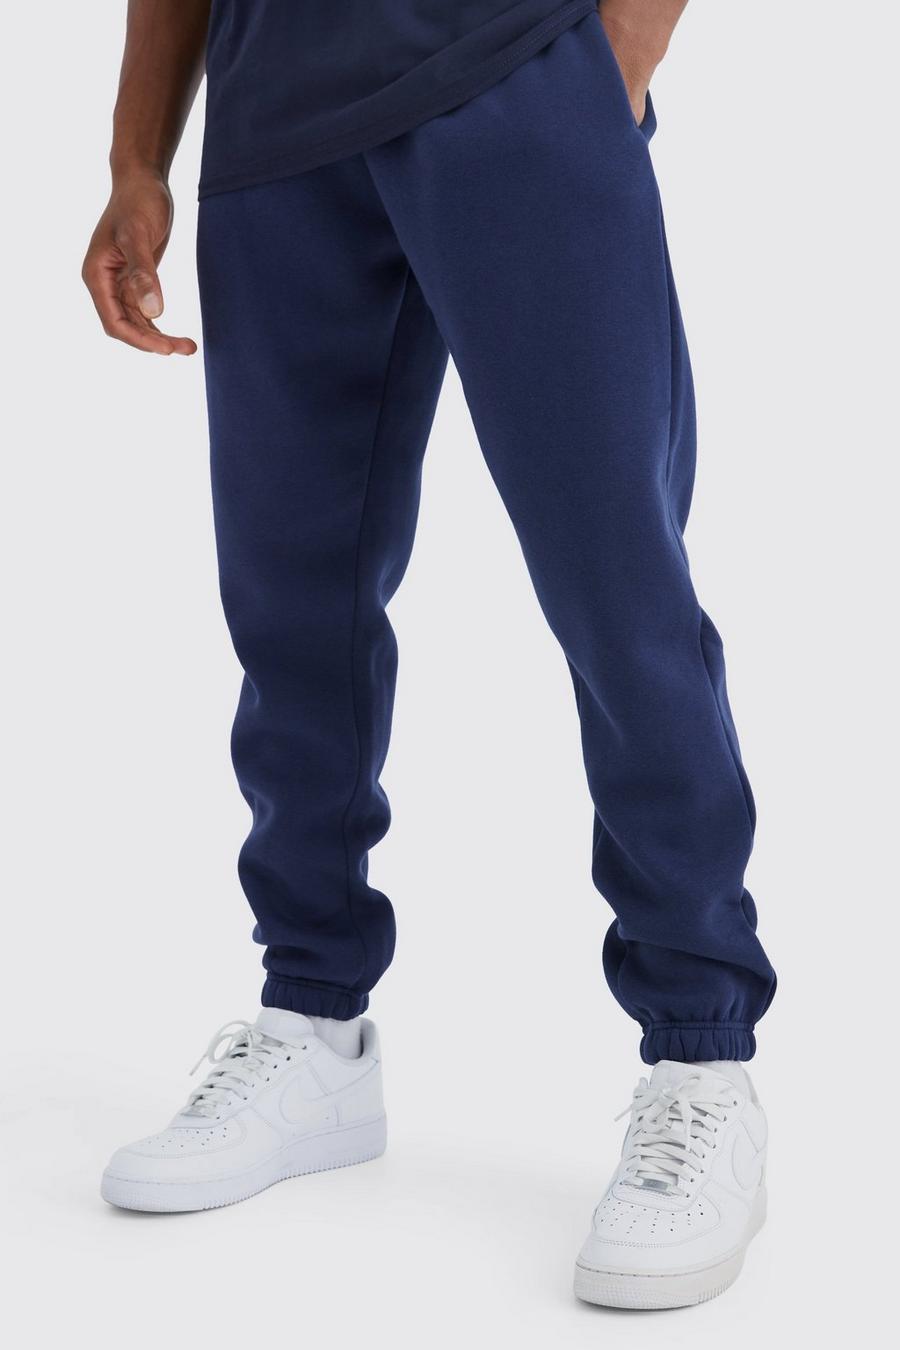 Pantaloni tuta Basic Slim Fit, Navy